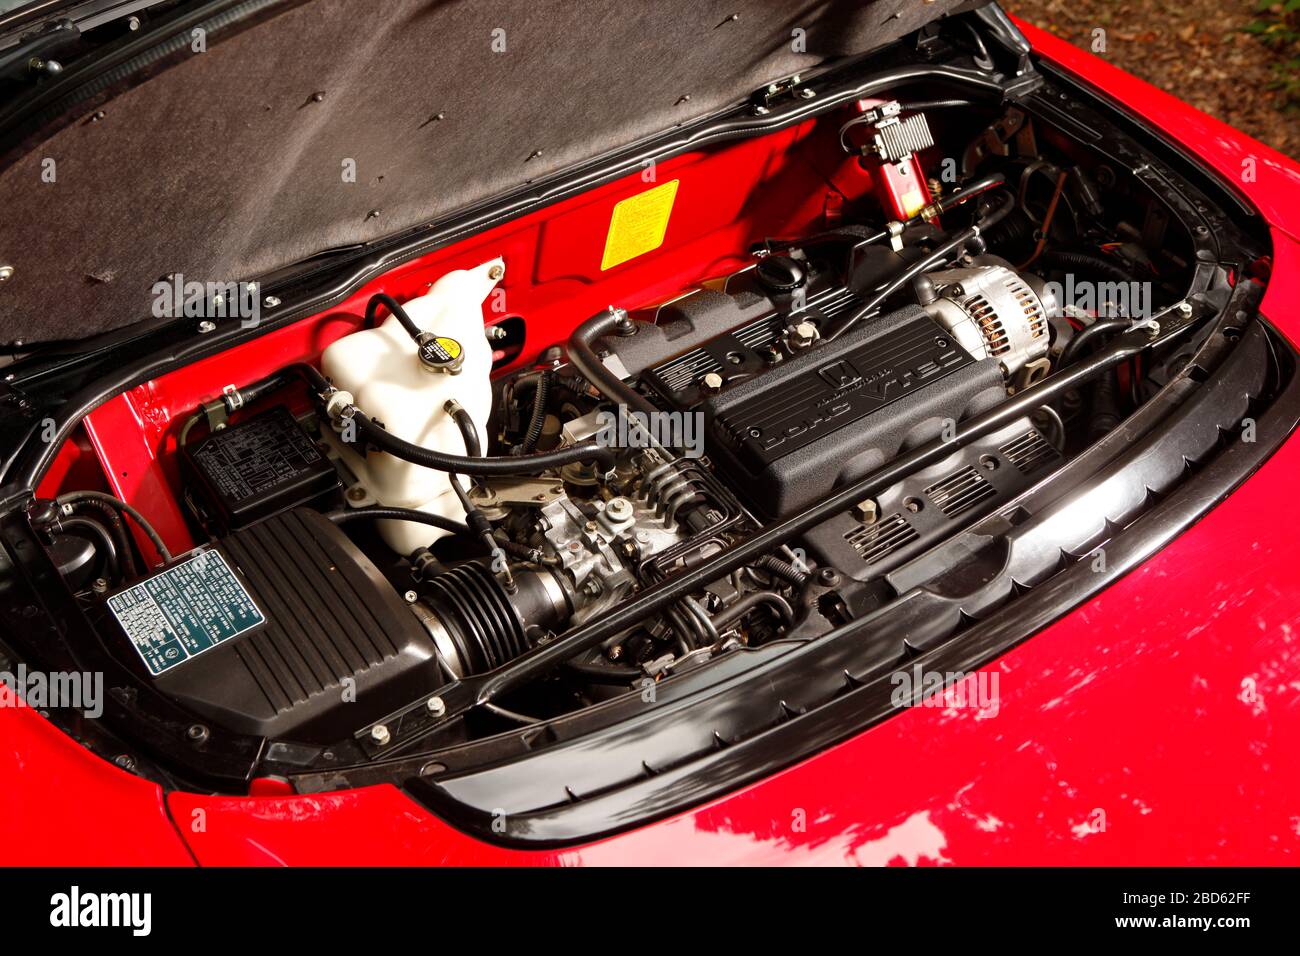 Honda NSX engine Stock Photo - Alamy